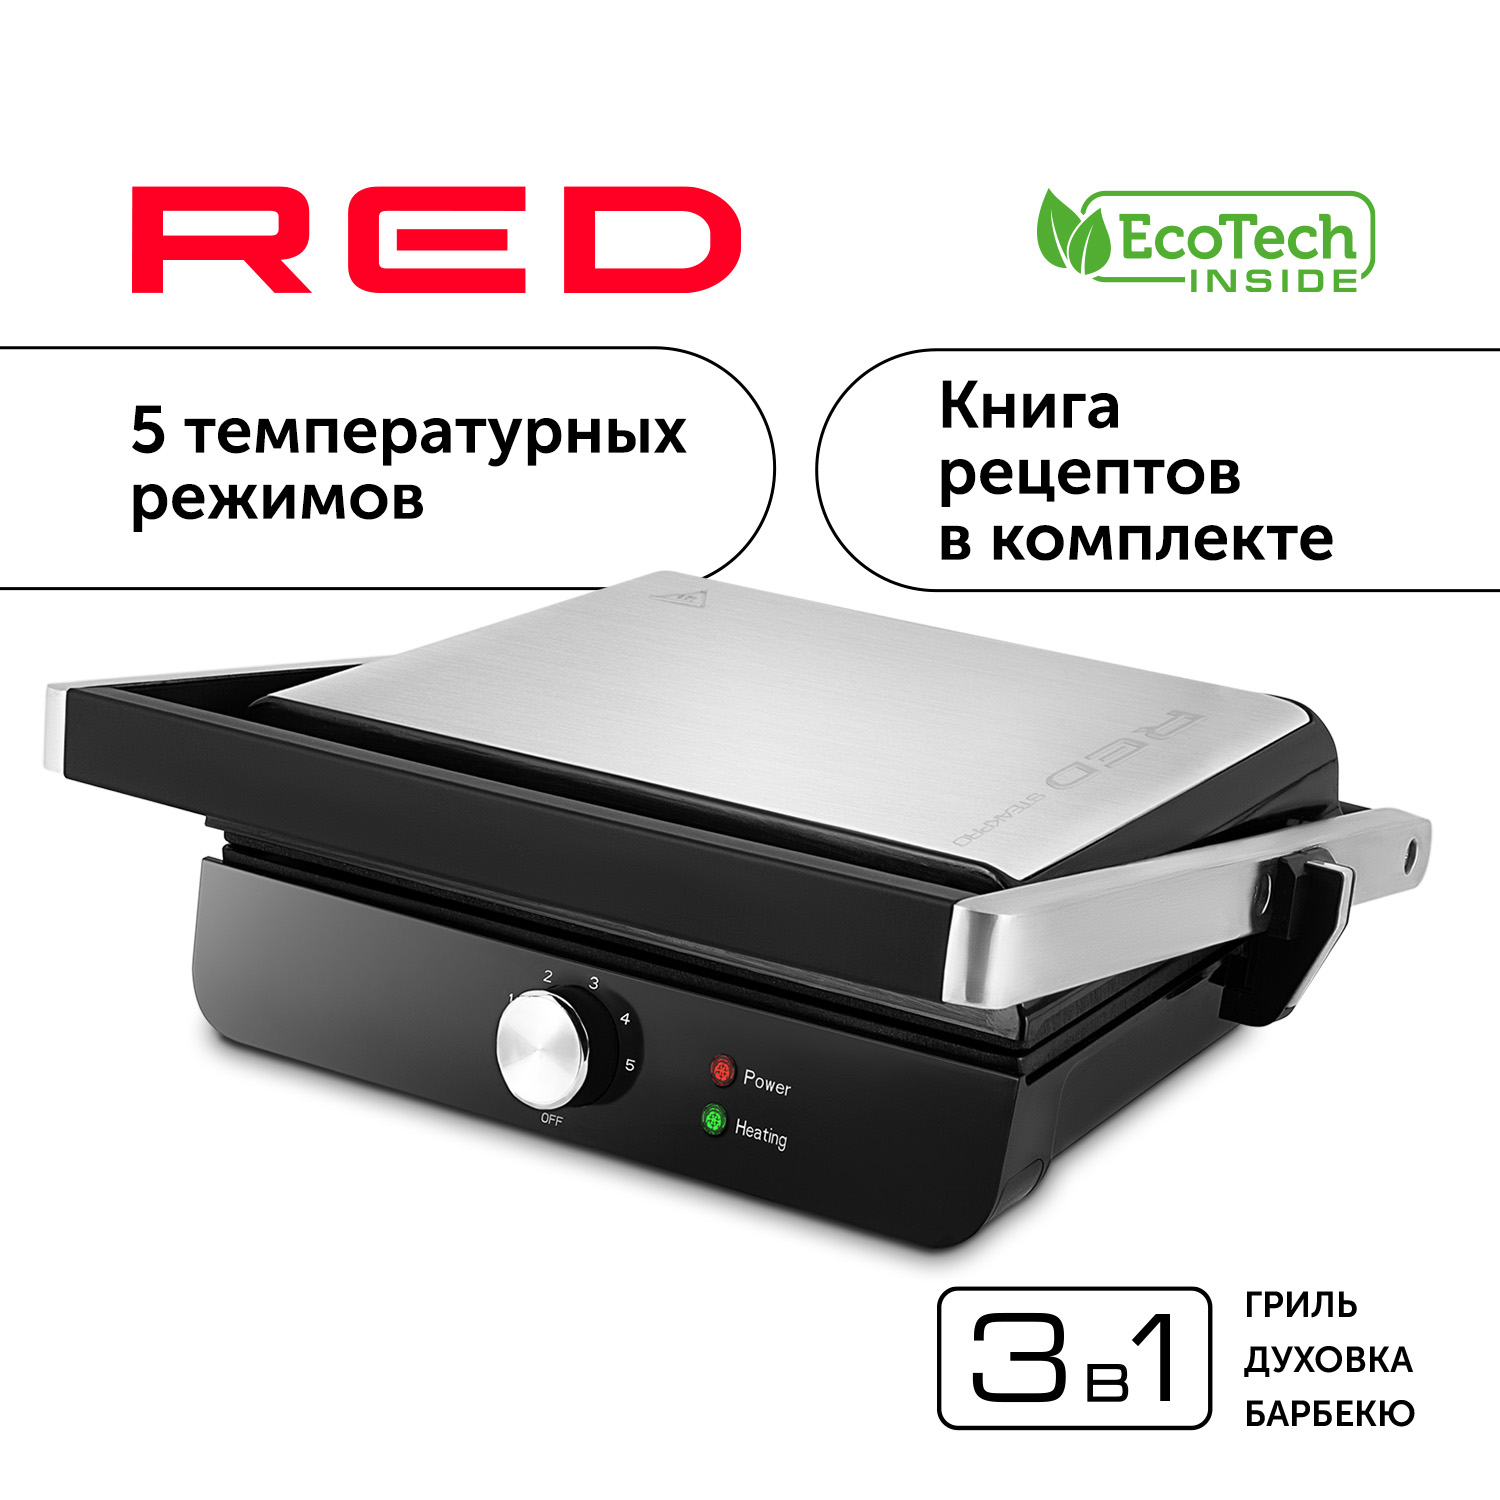 Гриль RED SOLUTION RGM-M815 серебристый, серый, черный гриль redmond rgm m835d серебристый серый